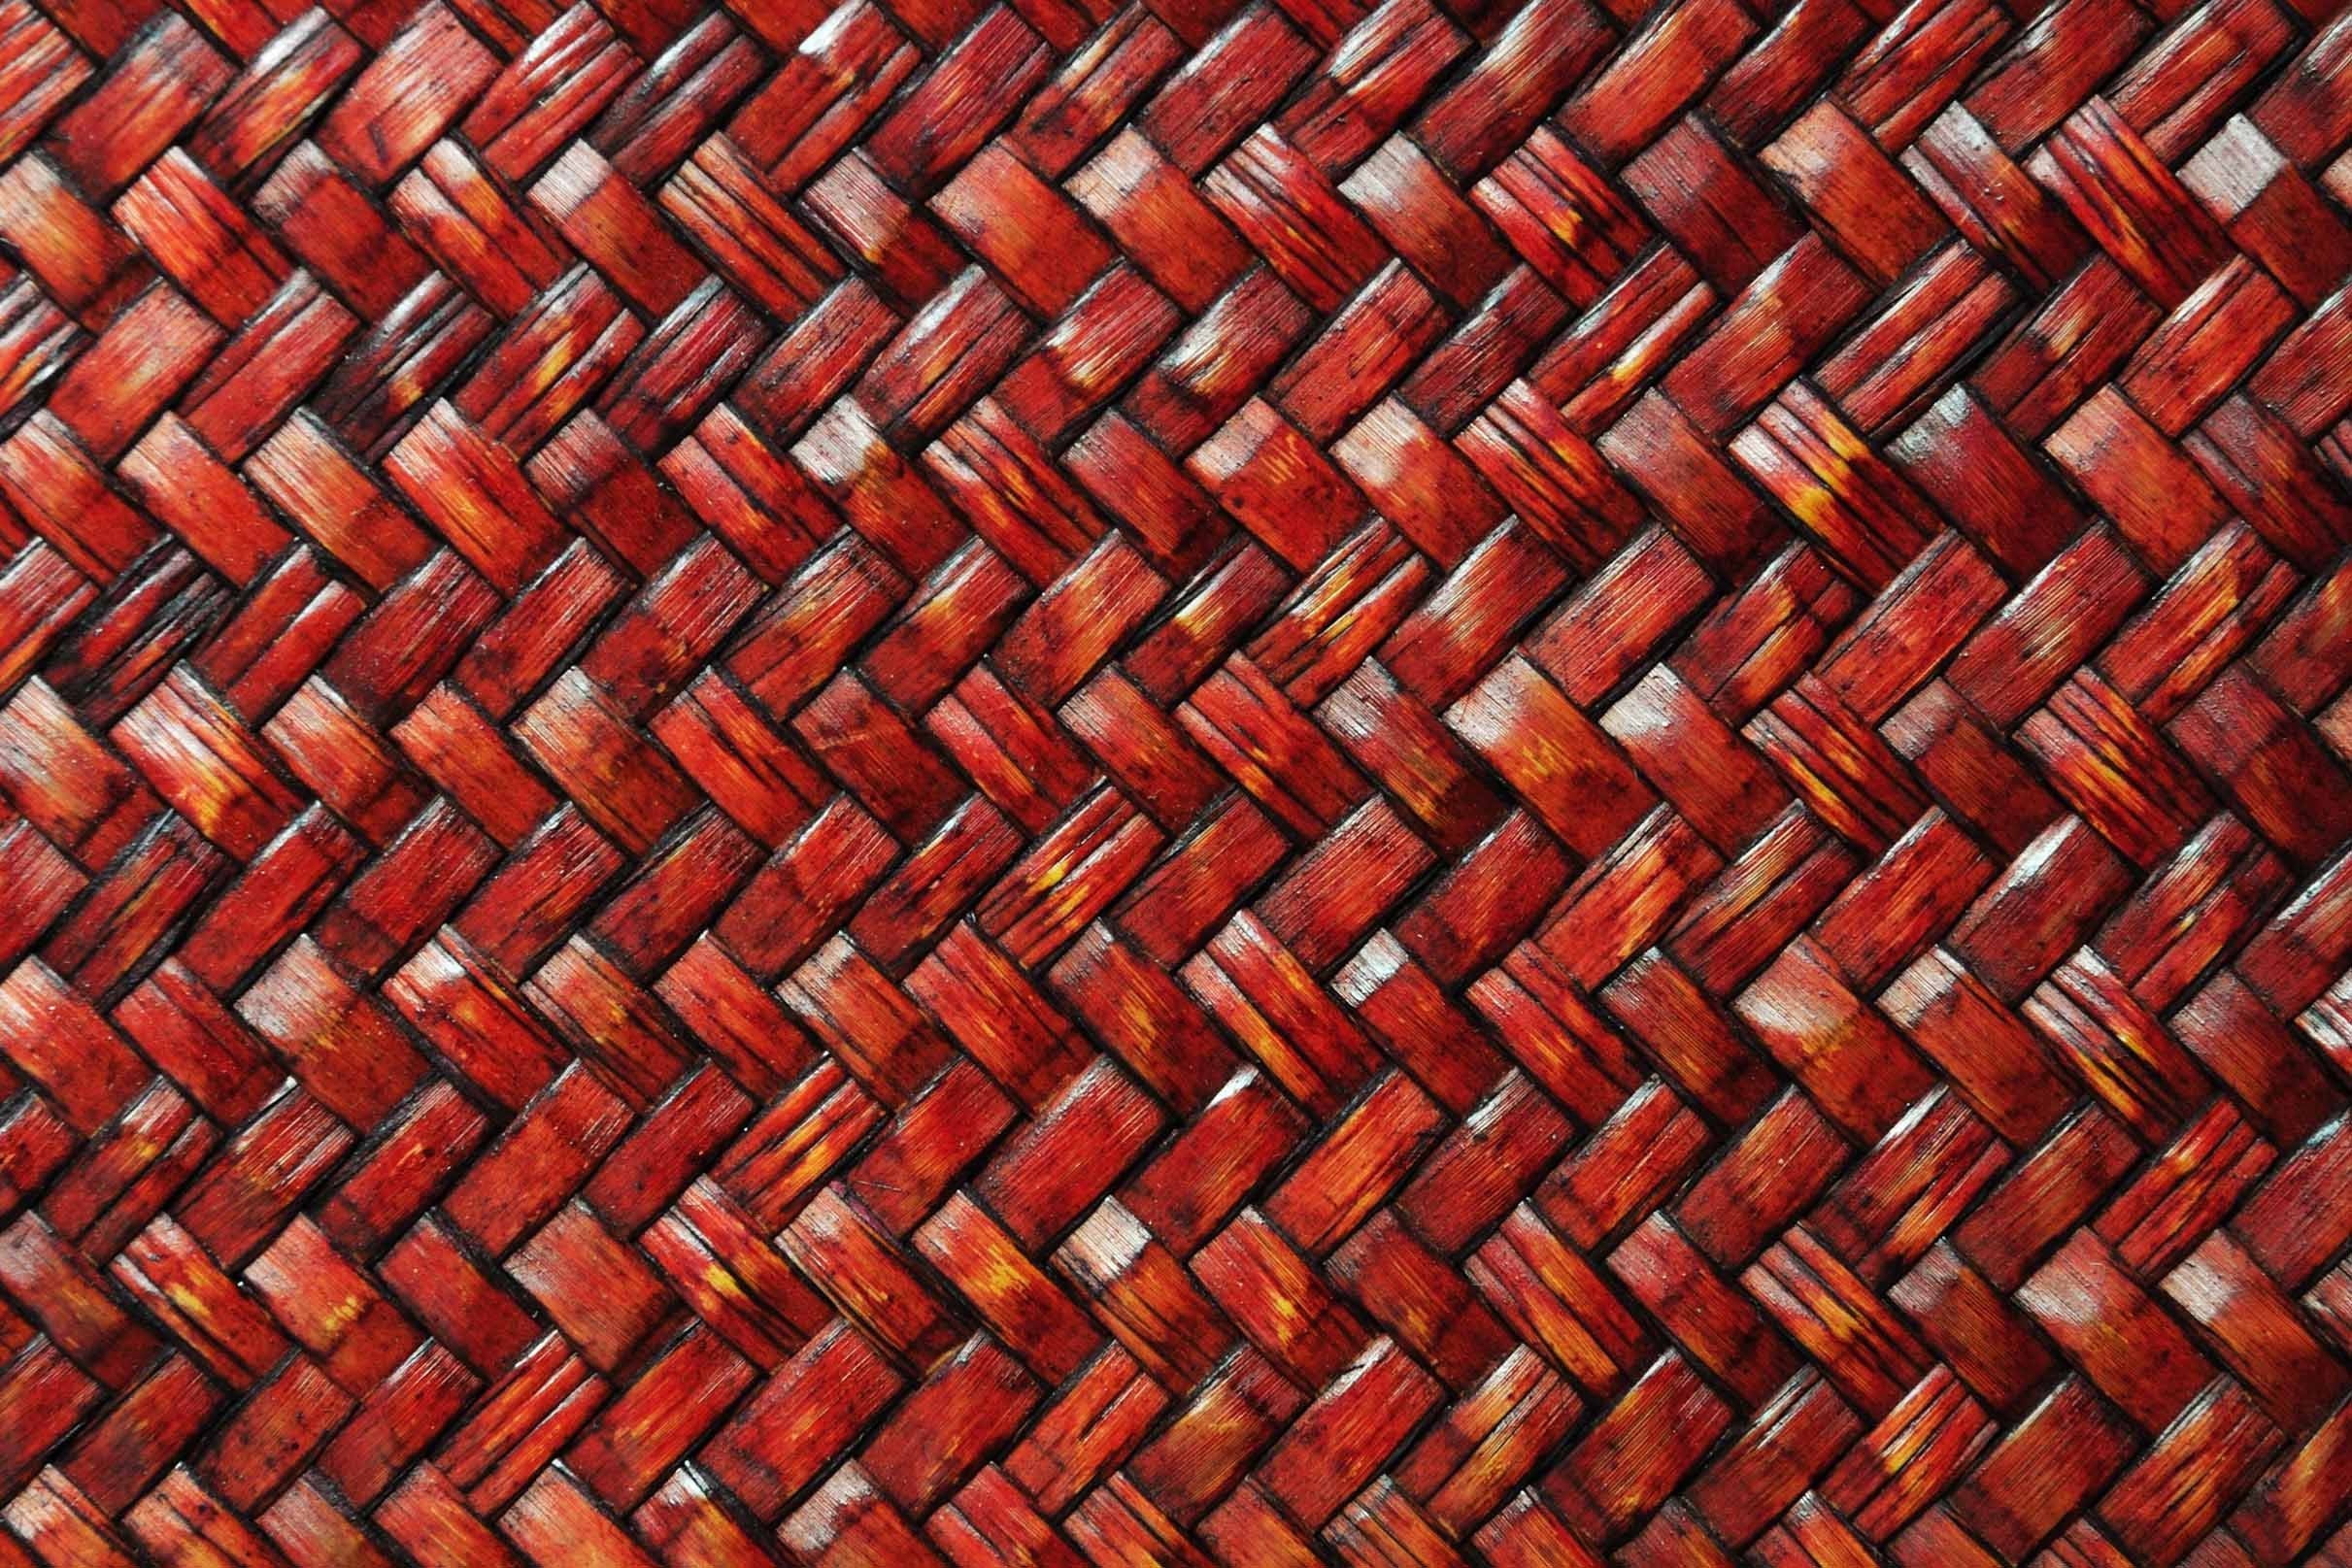 3D Bamboo Weave Kitchen Mat Floor Mural Wallpaper AJ Wallpaper 